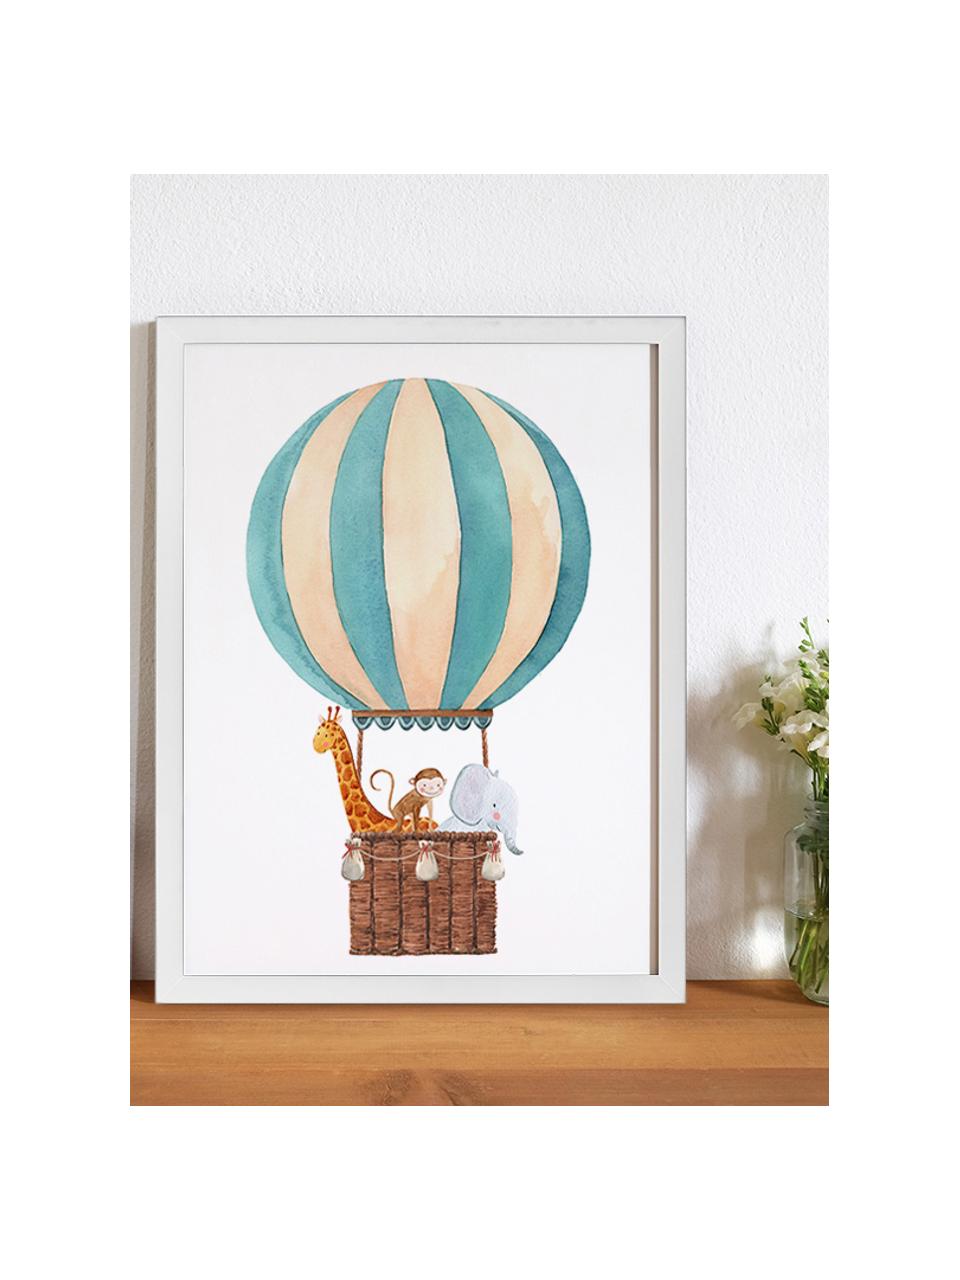 Gerahmter Digitaldruck Balloon, Bild: Digitaldruck auf Papier, , Rahmen: Holz, lackiert, Front: Plexiglas, Weiß, Bunt, B 33 x H 43 cm